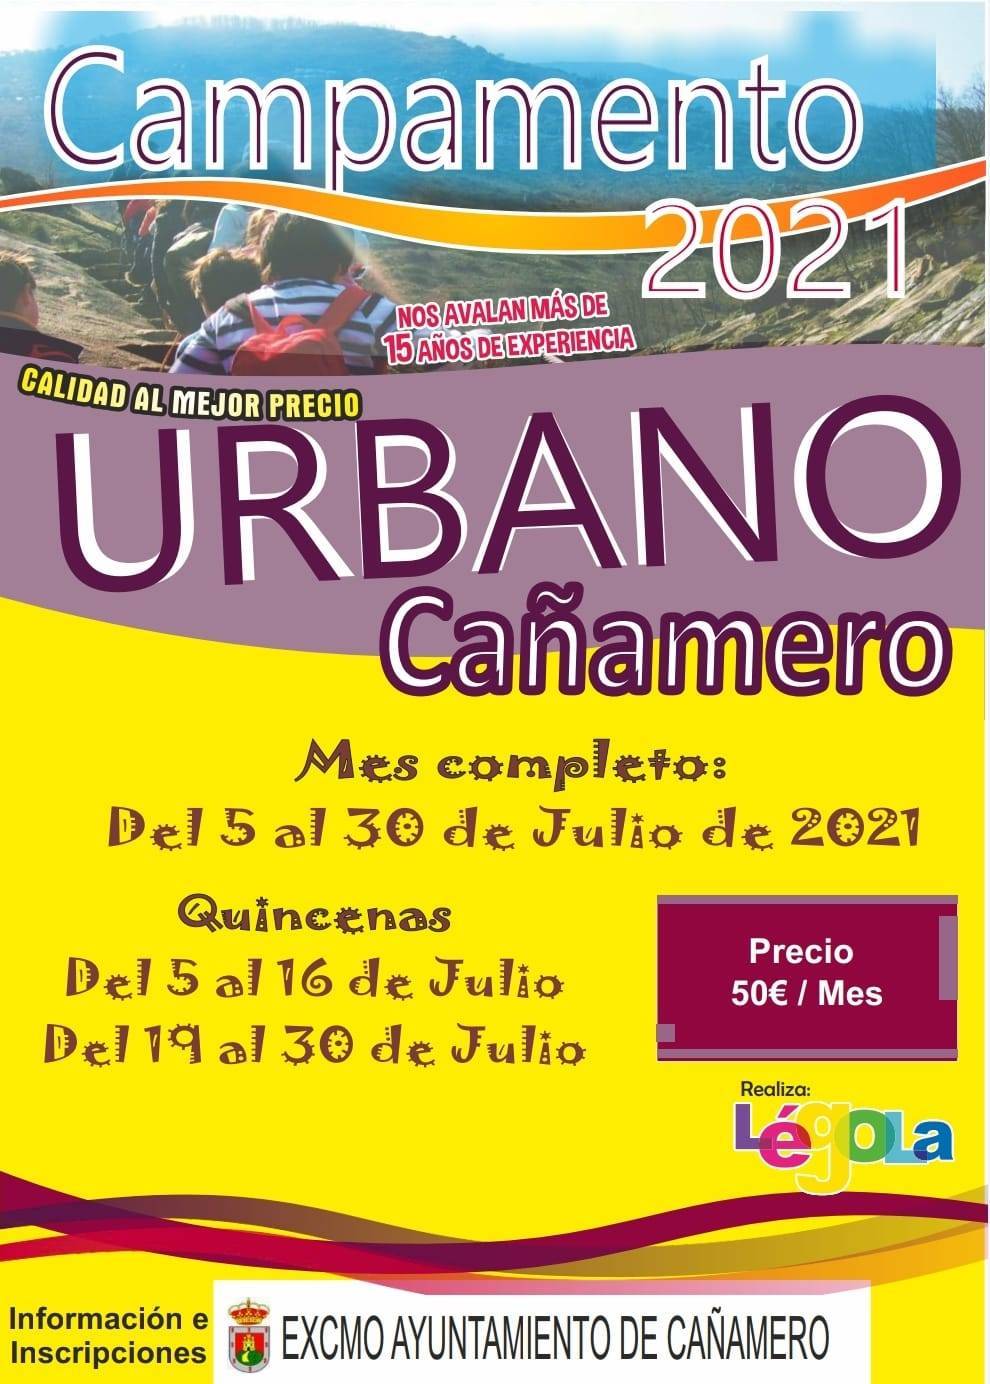 Campamento urbano de verano (2021) - Cañamero (Cáceres)